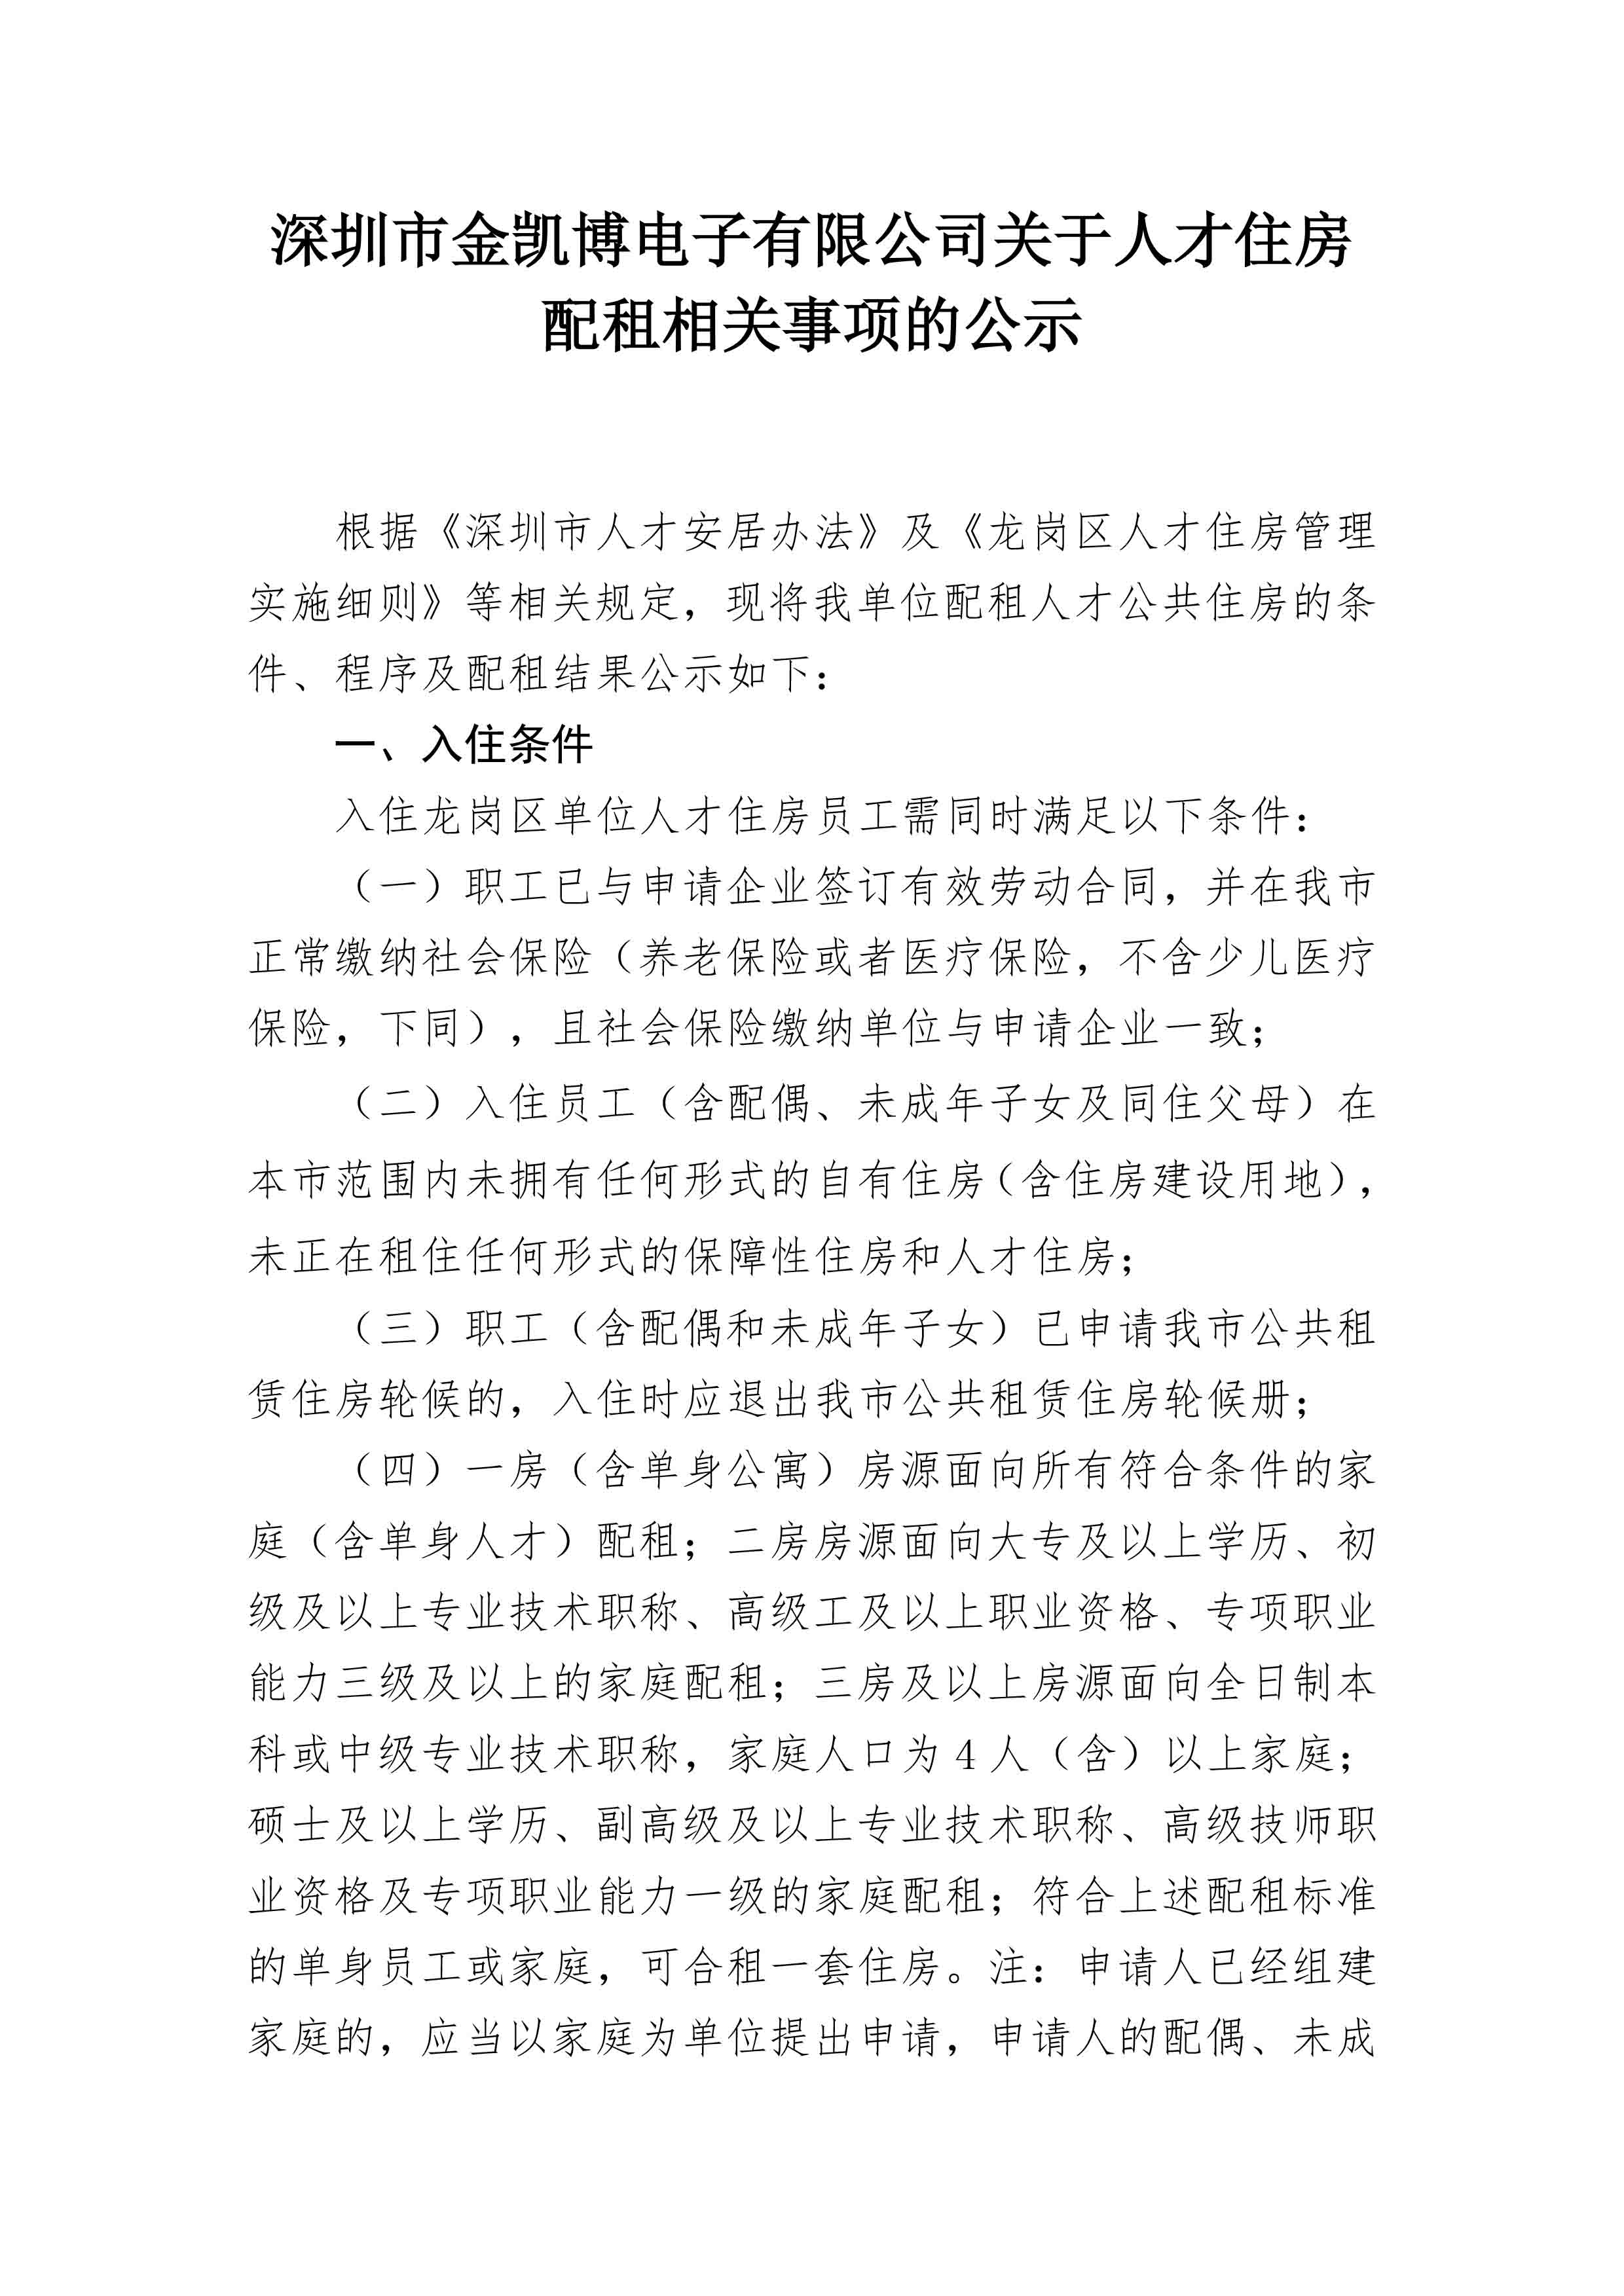 深圳市金凯博电子有限公司关于人才住房配租相关事项的公示